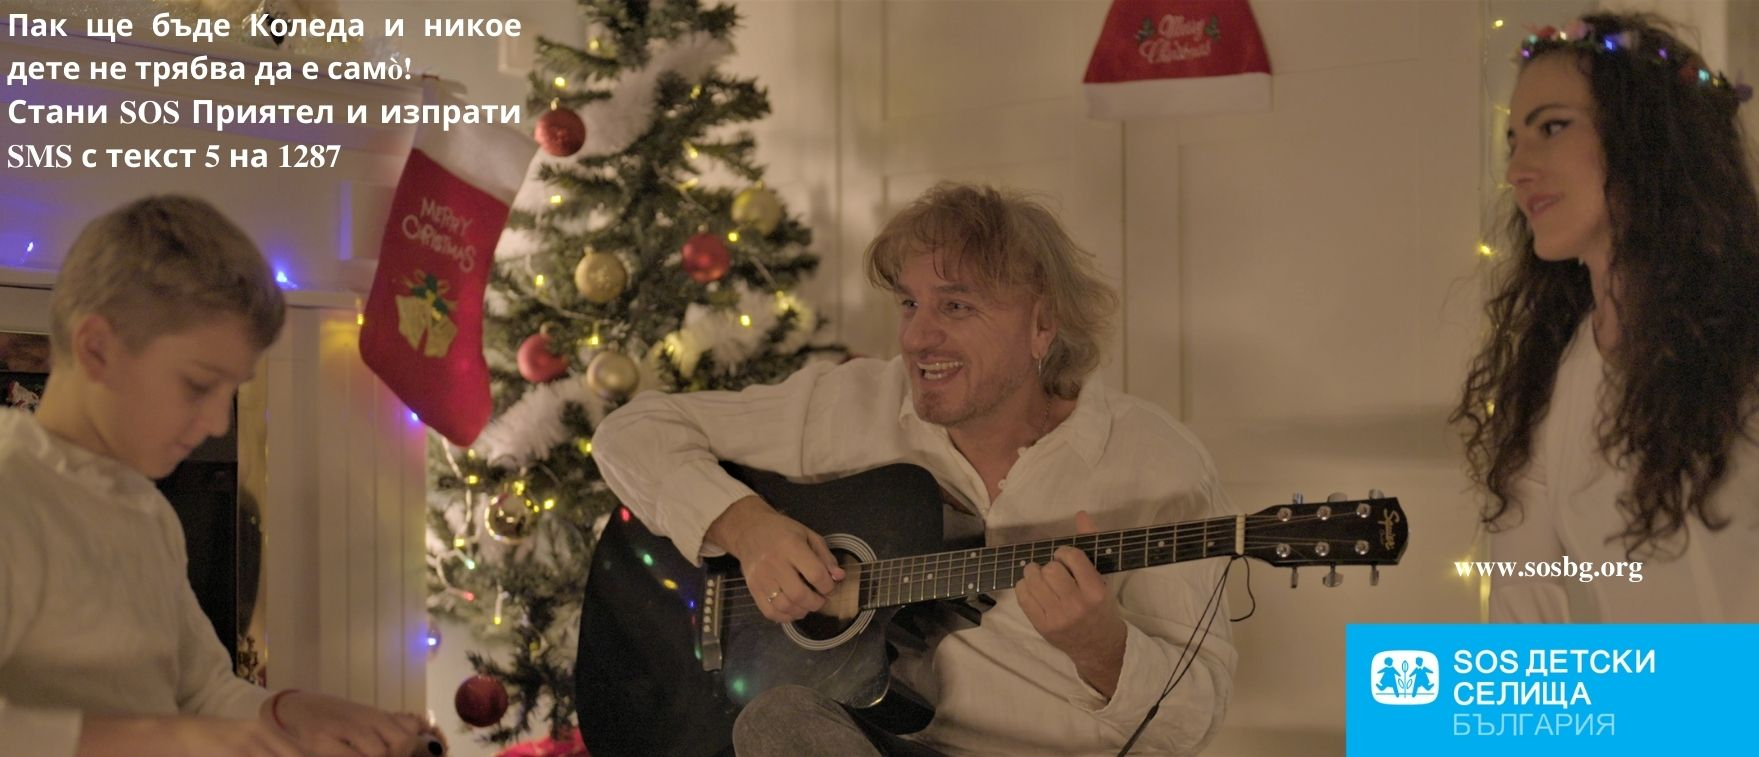 Пак ще бъде Коледа – Коцето Калки подарява своя песен на SOS Детски селища България